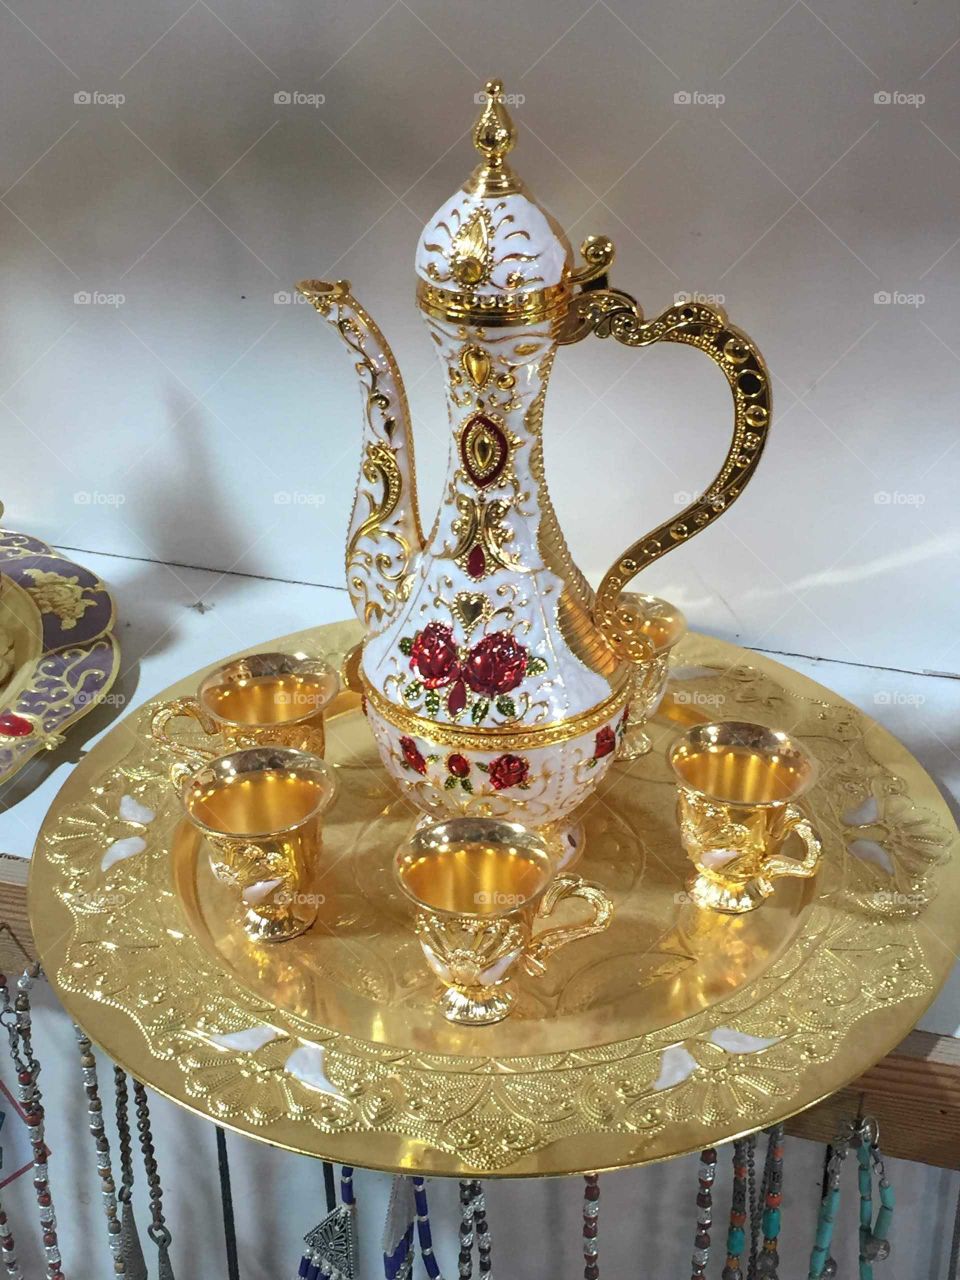 Ornate tea kettle